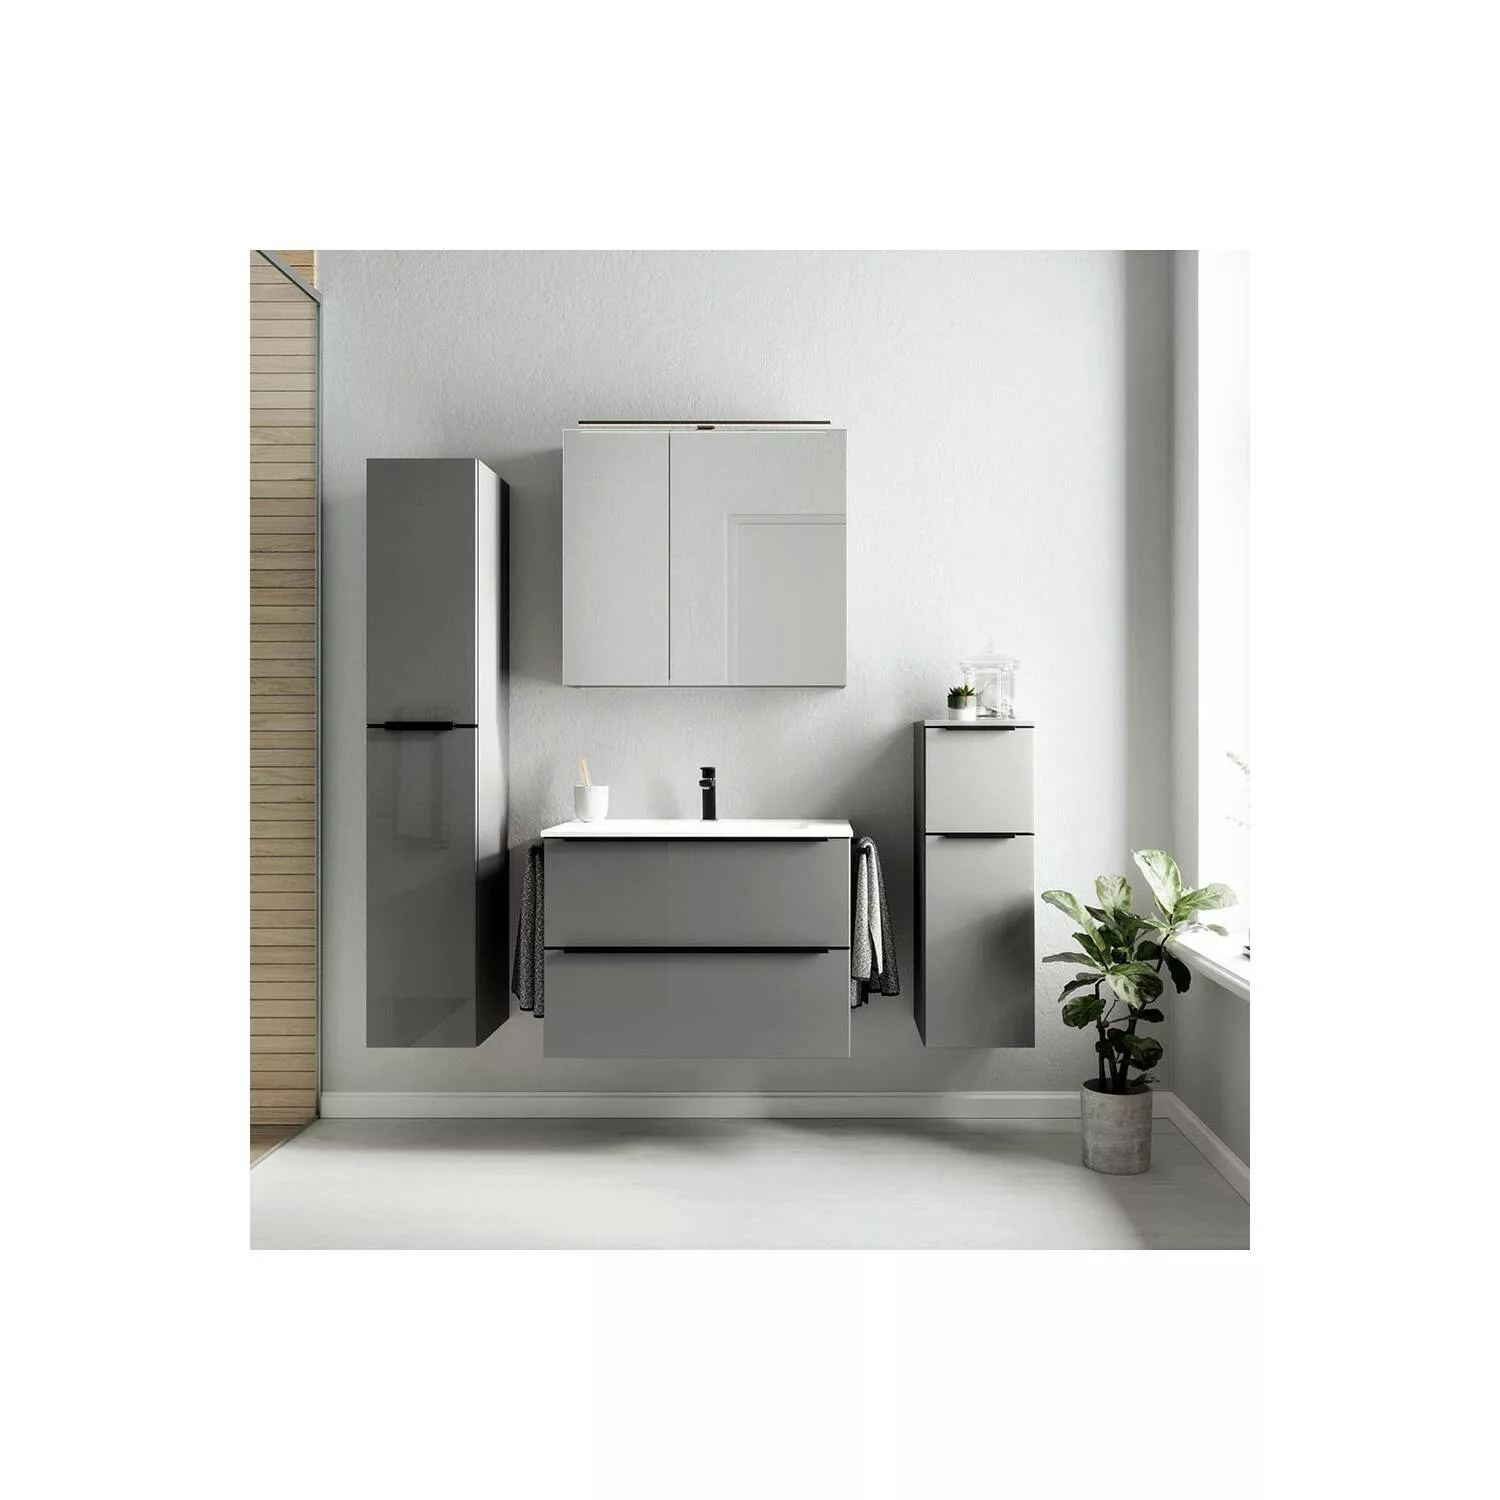 Badmöbel Komplett Set mit Spiegelschrank, 2 Handtuchhalter, Griffleisten ed günstig online kaufen